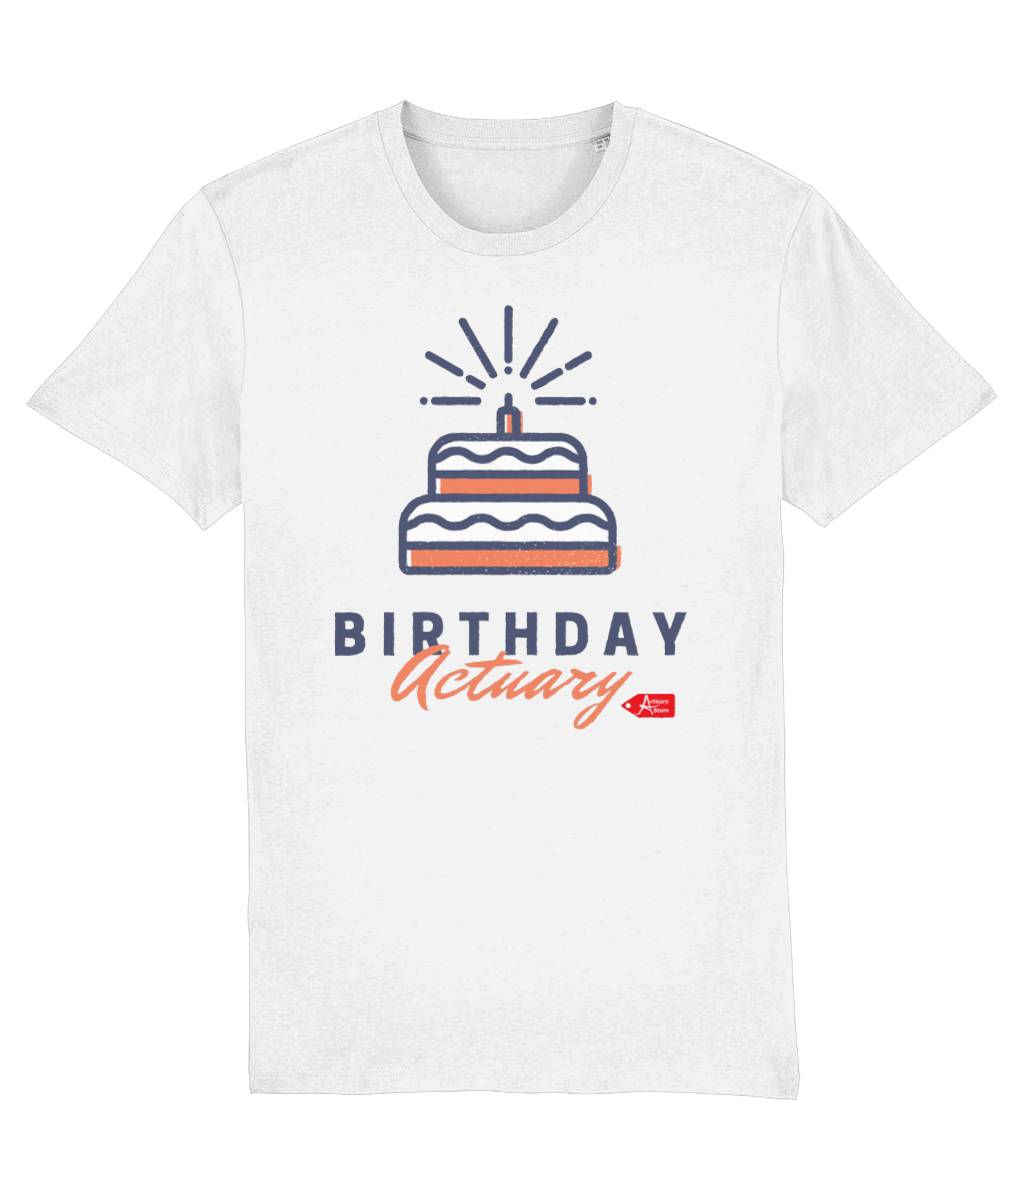 Birthday Actuary White T-Shirt